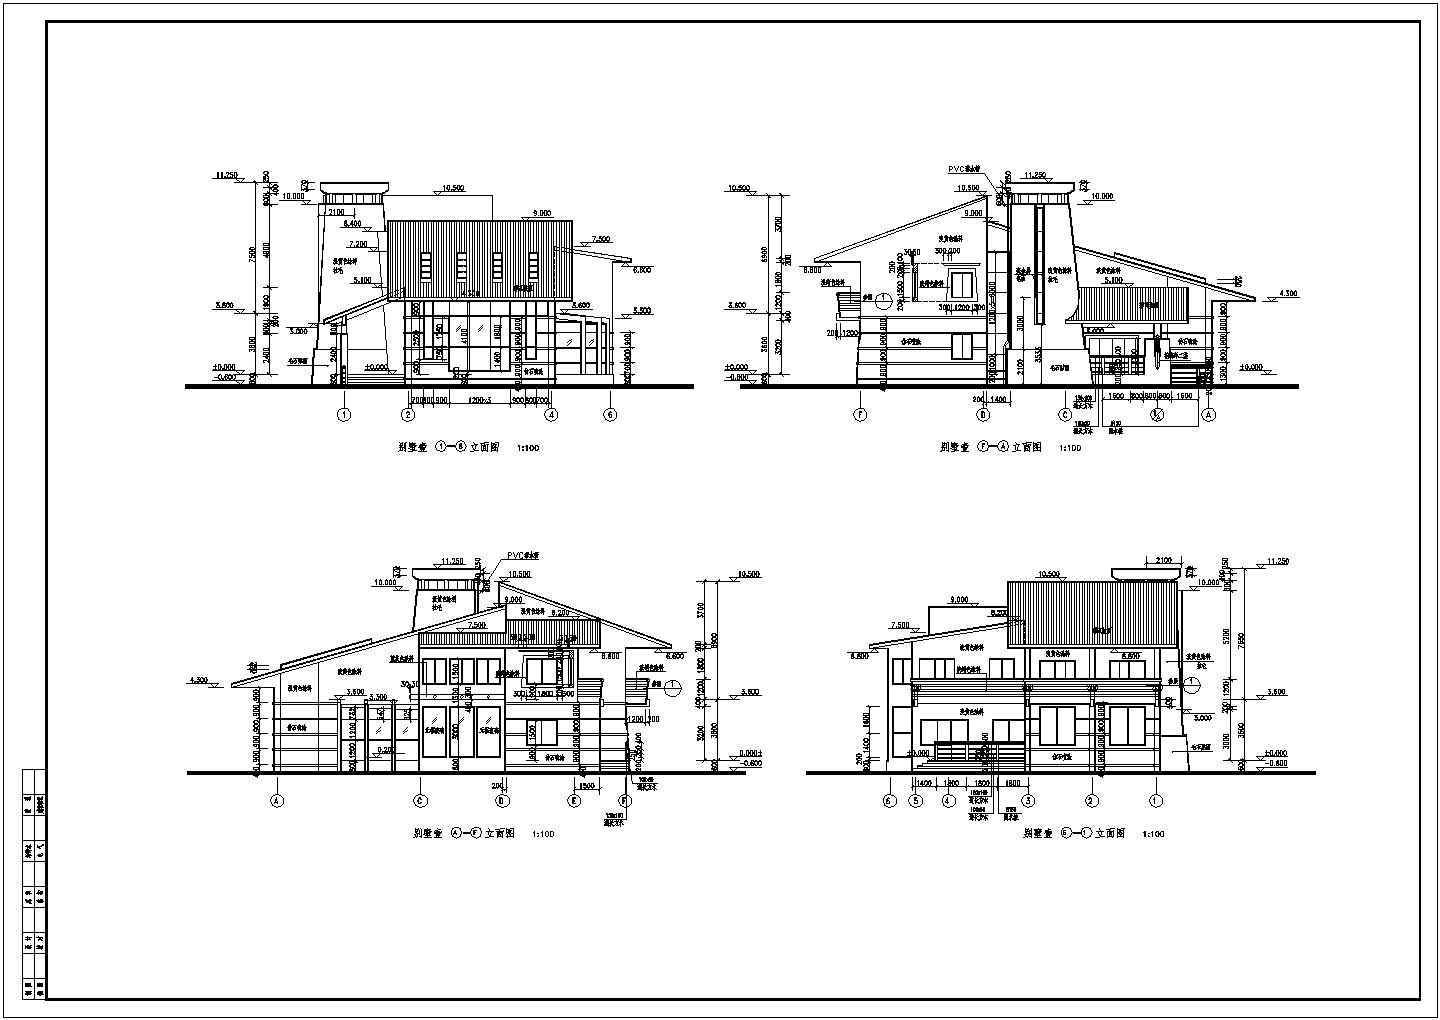 藏式舒适二层新农村住宅建筑设计图